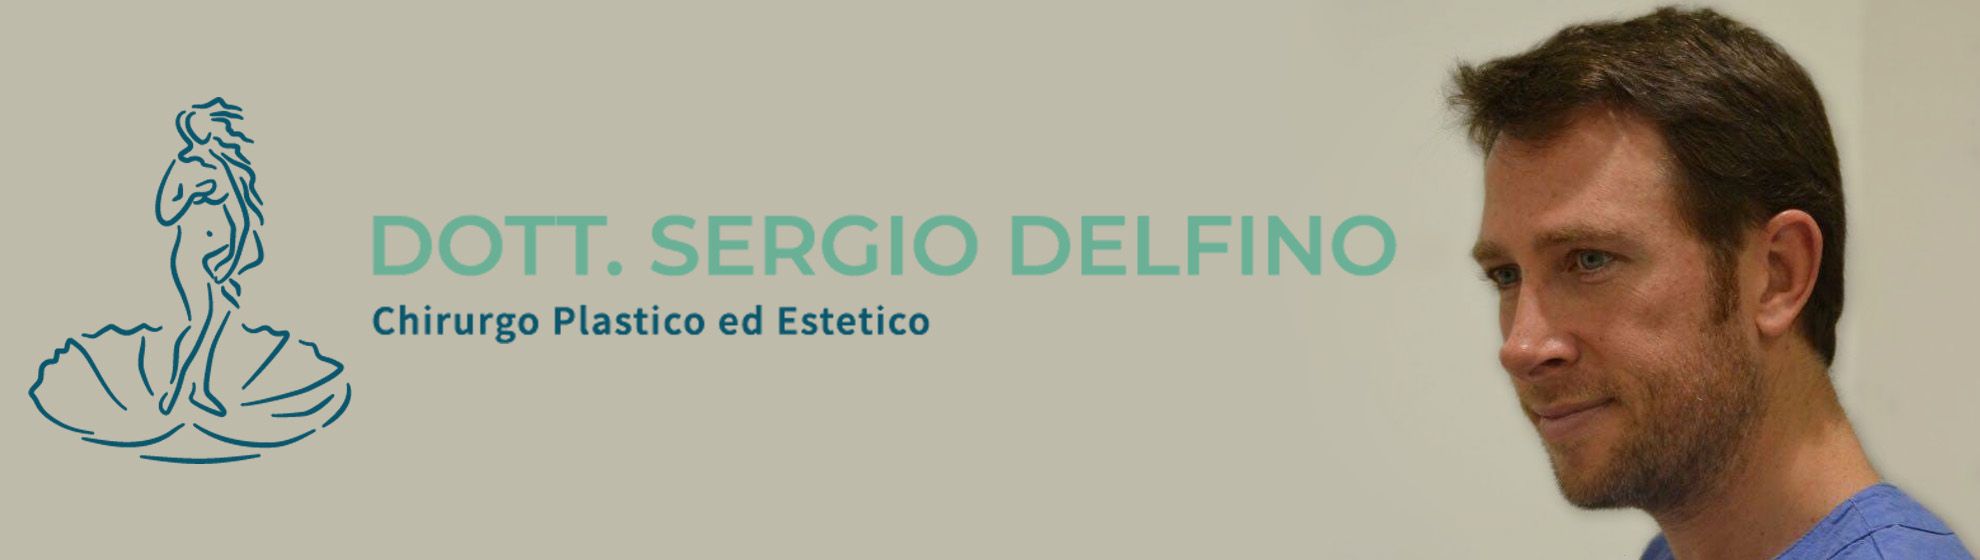 Dott. Sergio Delfino